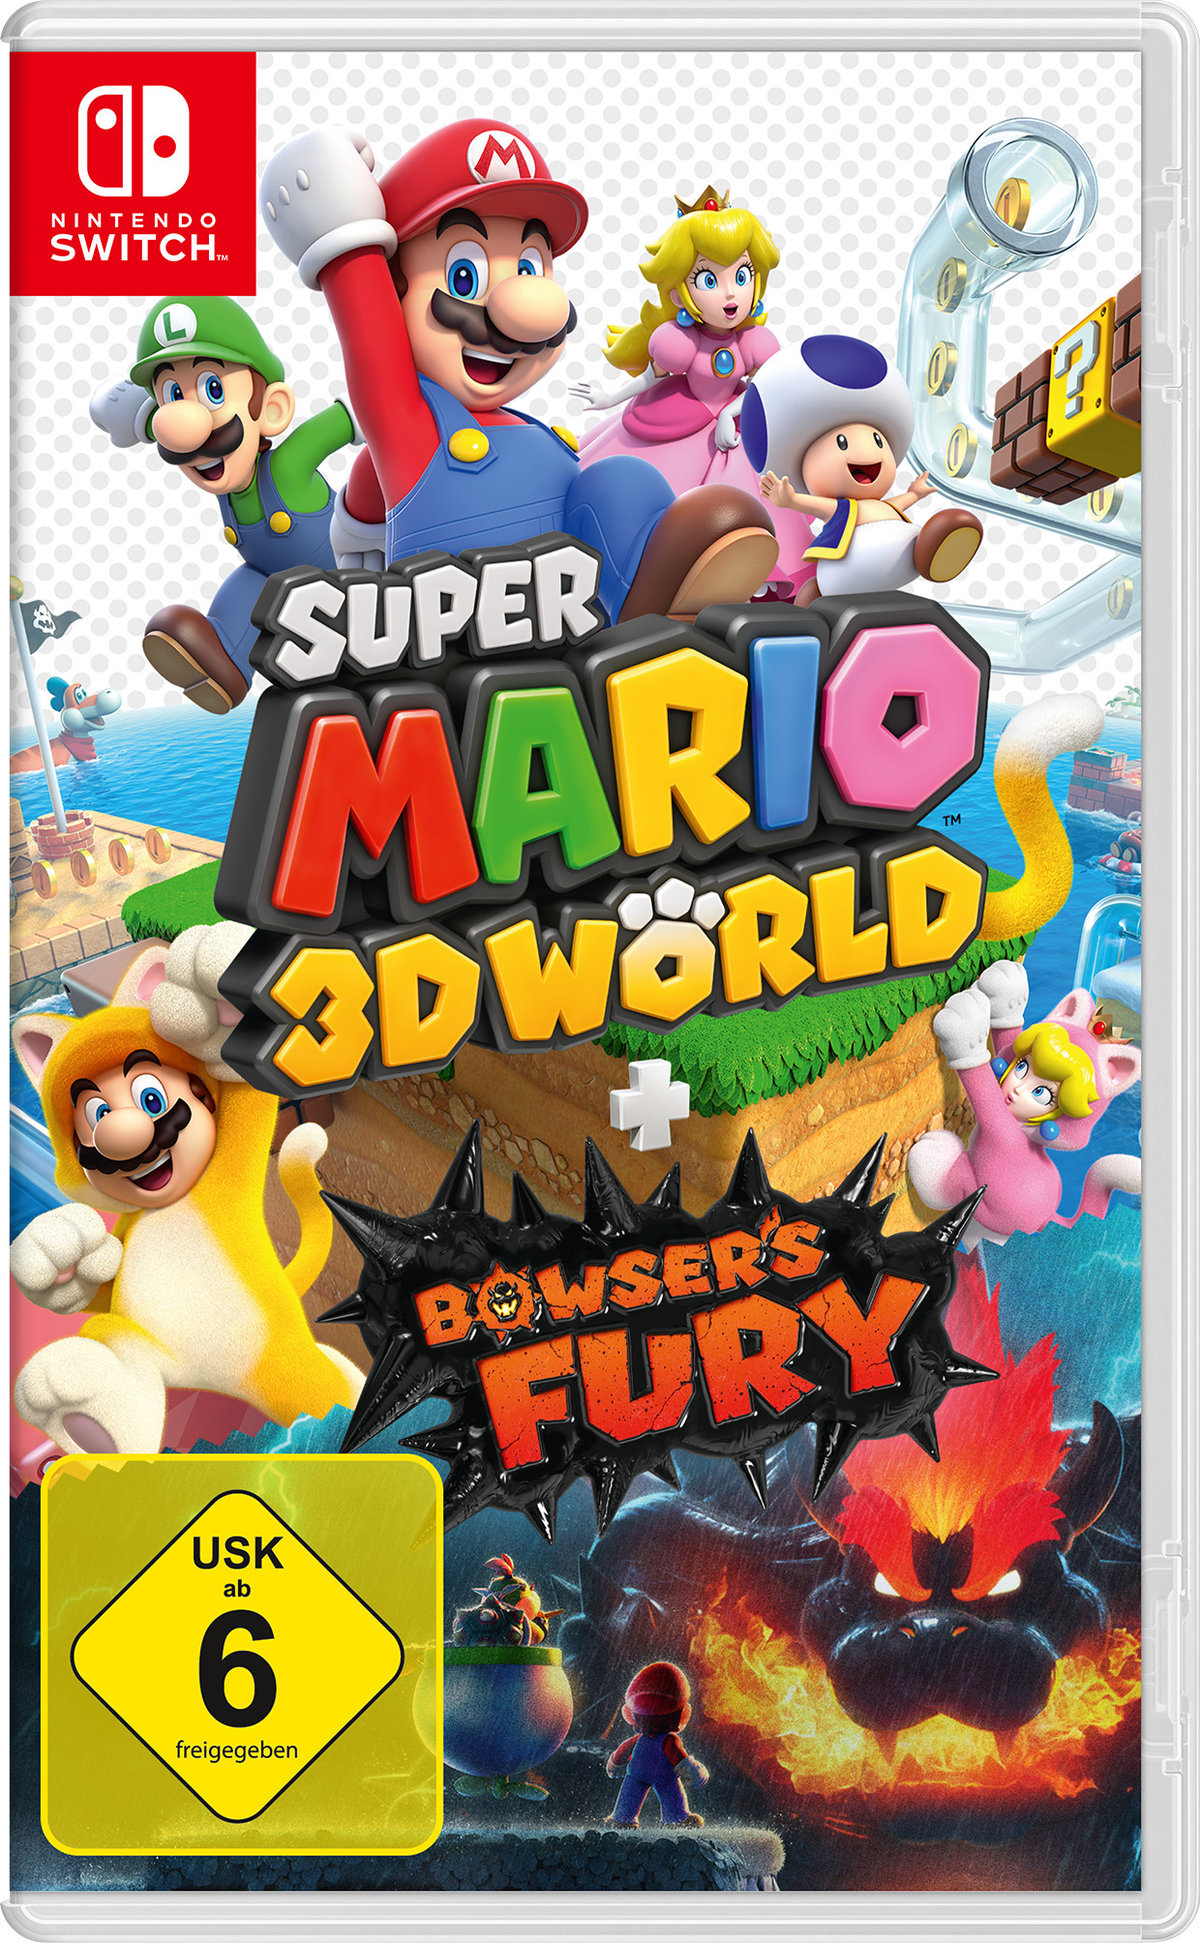 Super Mario 3D World SWITCH + Bowsers Fury von Nintendo